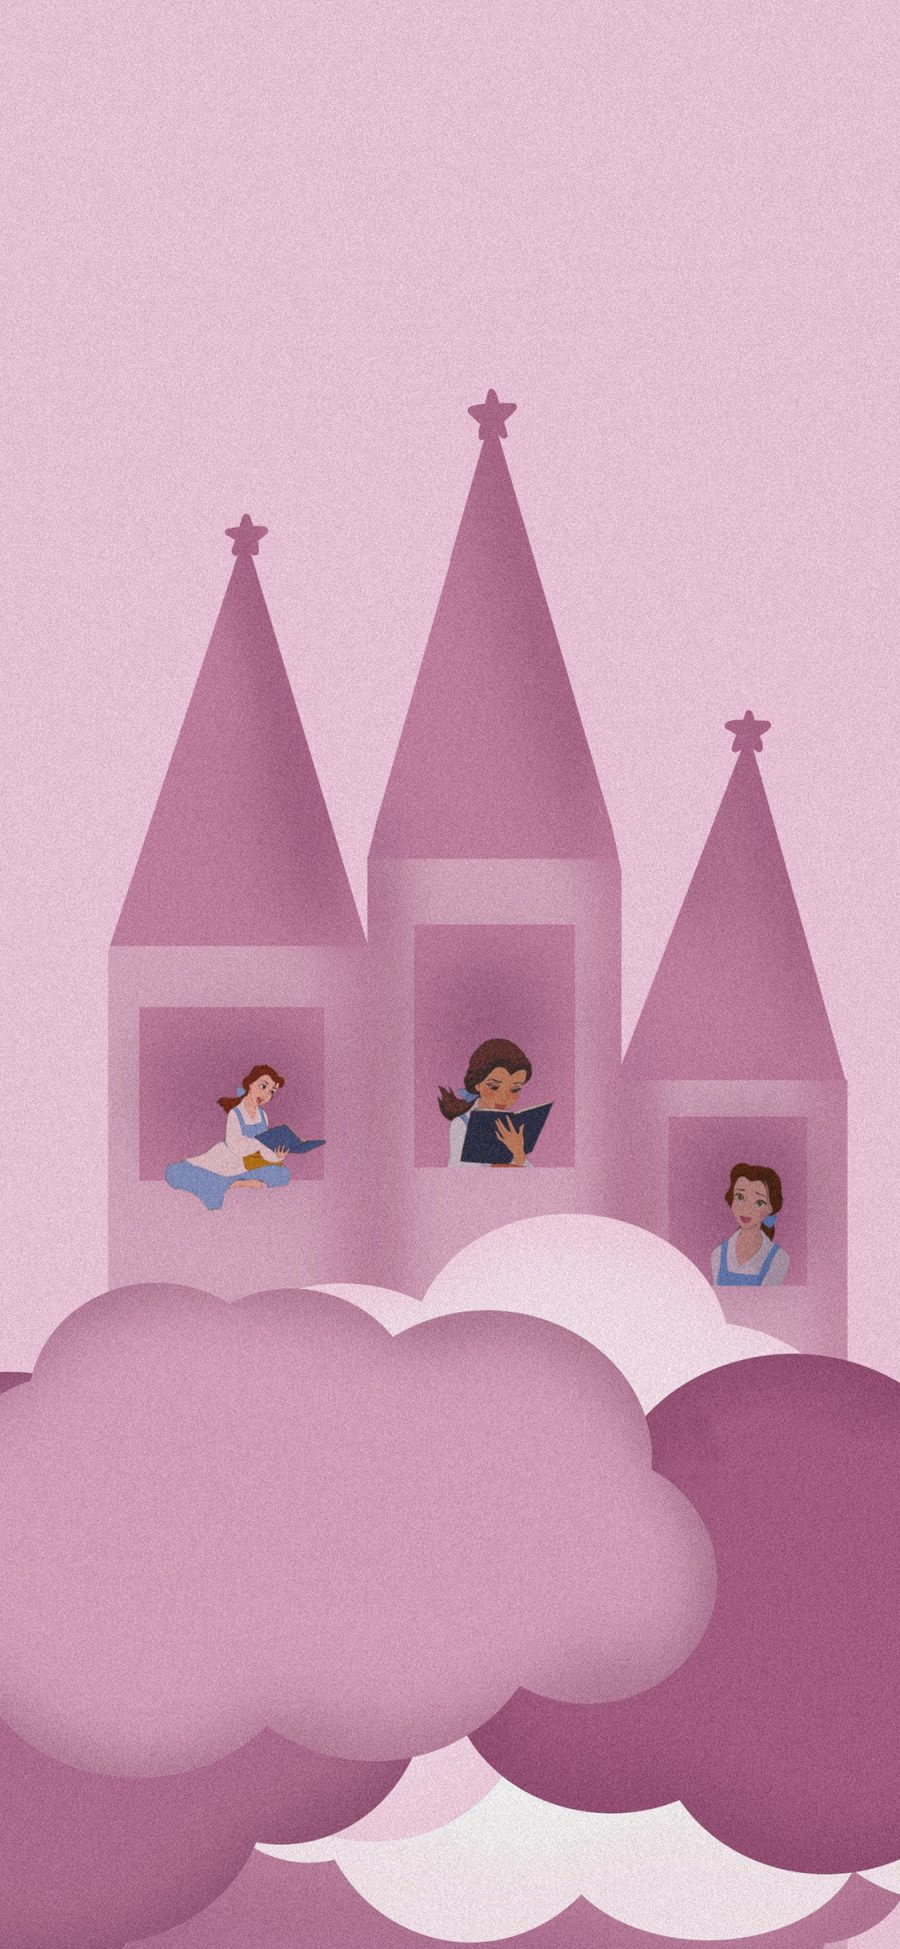 [2436×1125]迪士尼 城堡 公主 梦幻 苹果手机动漫壁纸图片